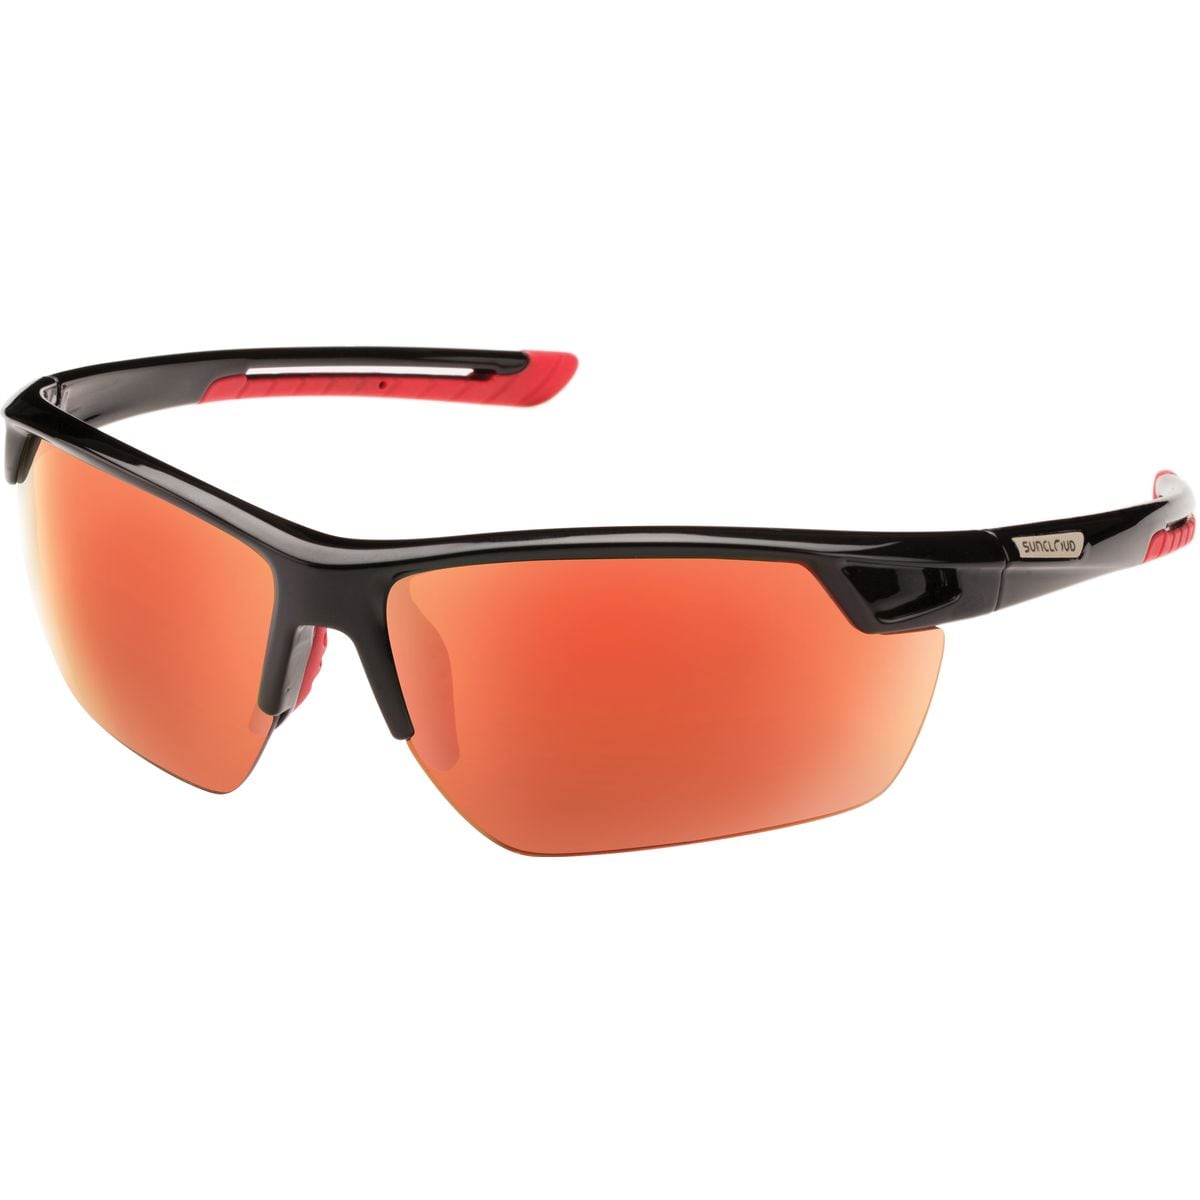 Поляризованные солнцезащитные очки contender Suncloud Polarized Optics, цвет black/red mirror очки солнцезащитные stylemark polarized l1504a